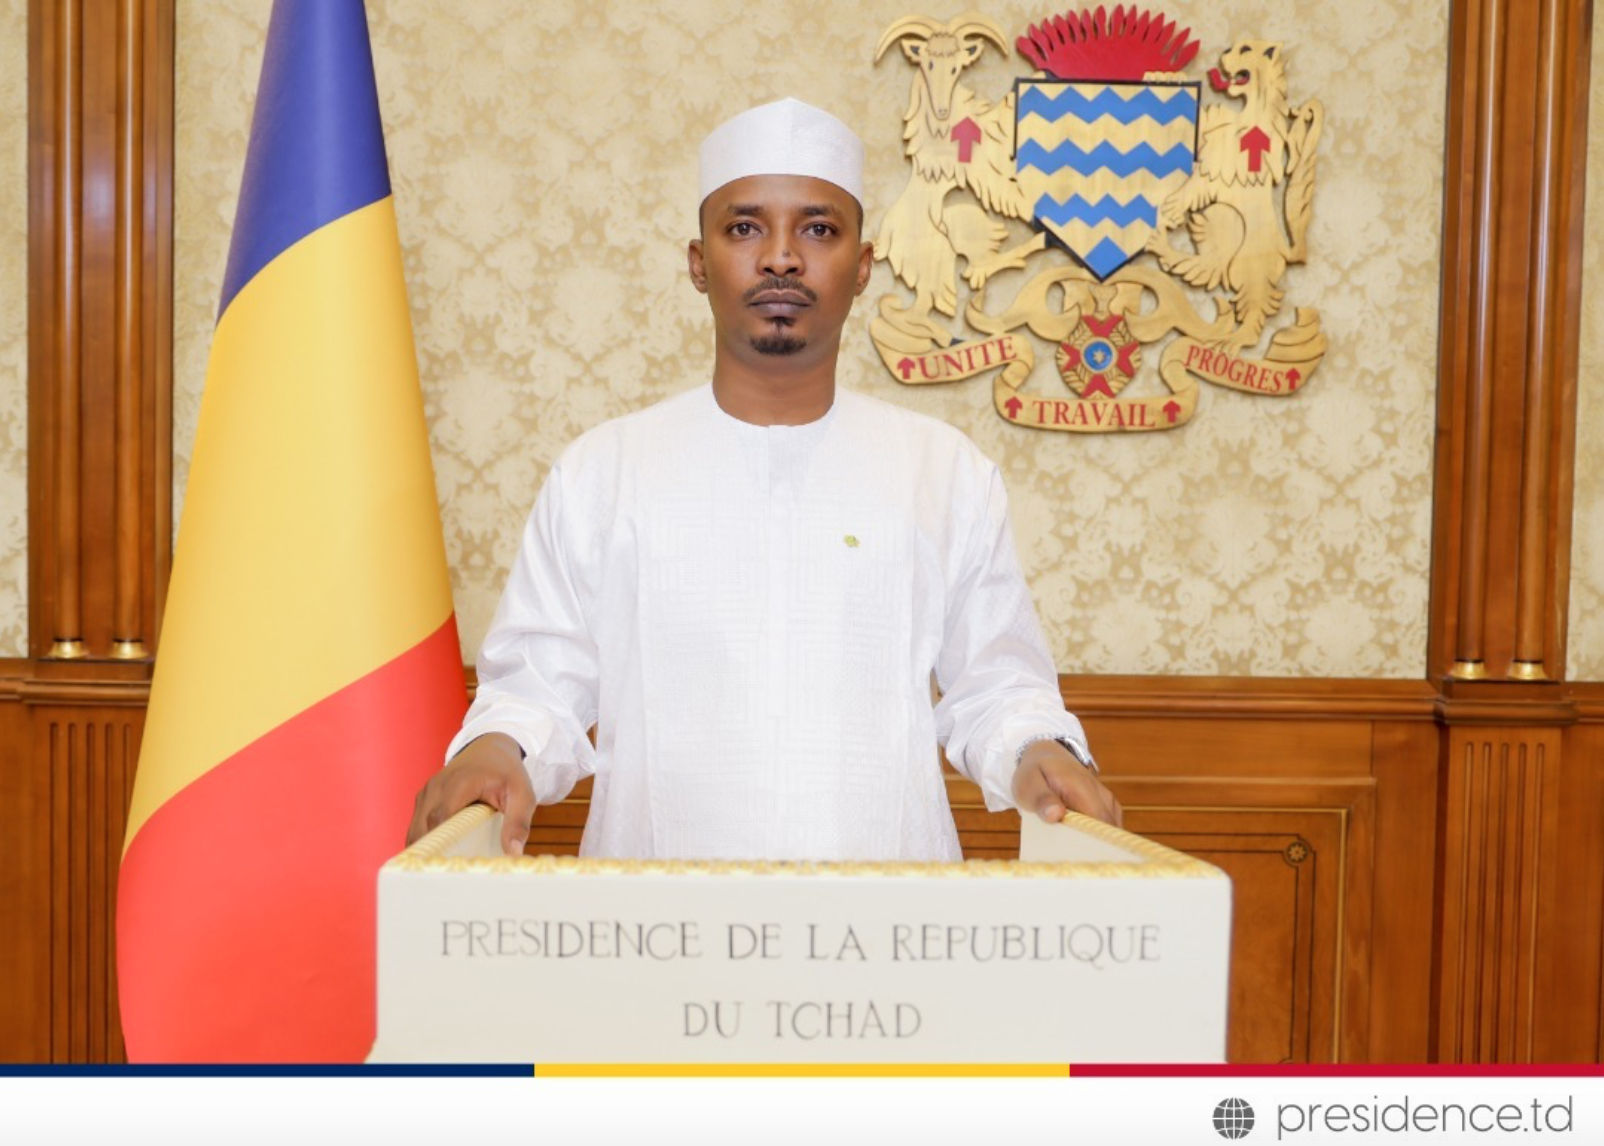 Tchad : le président annonce la revalorisation des petites pensions de retraites à 60 000 FCFA minimum